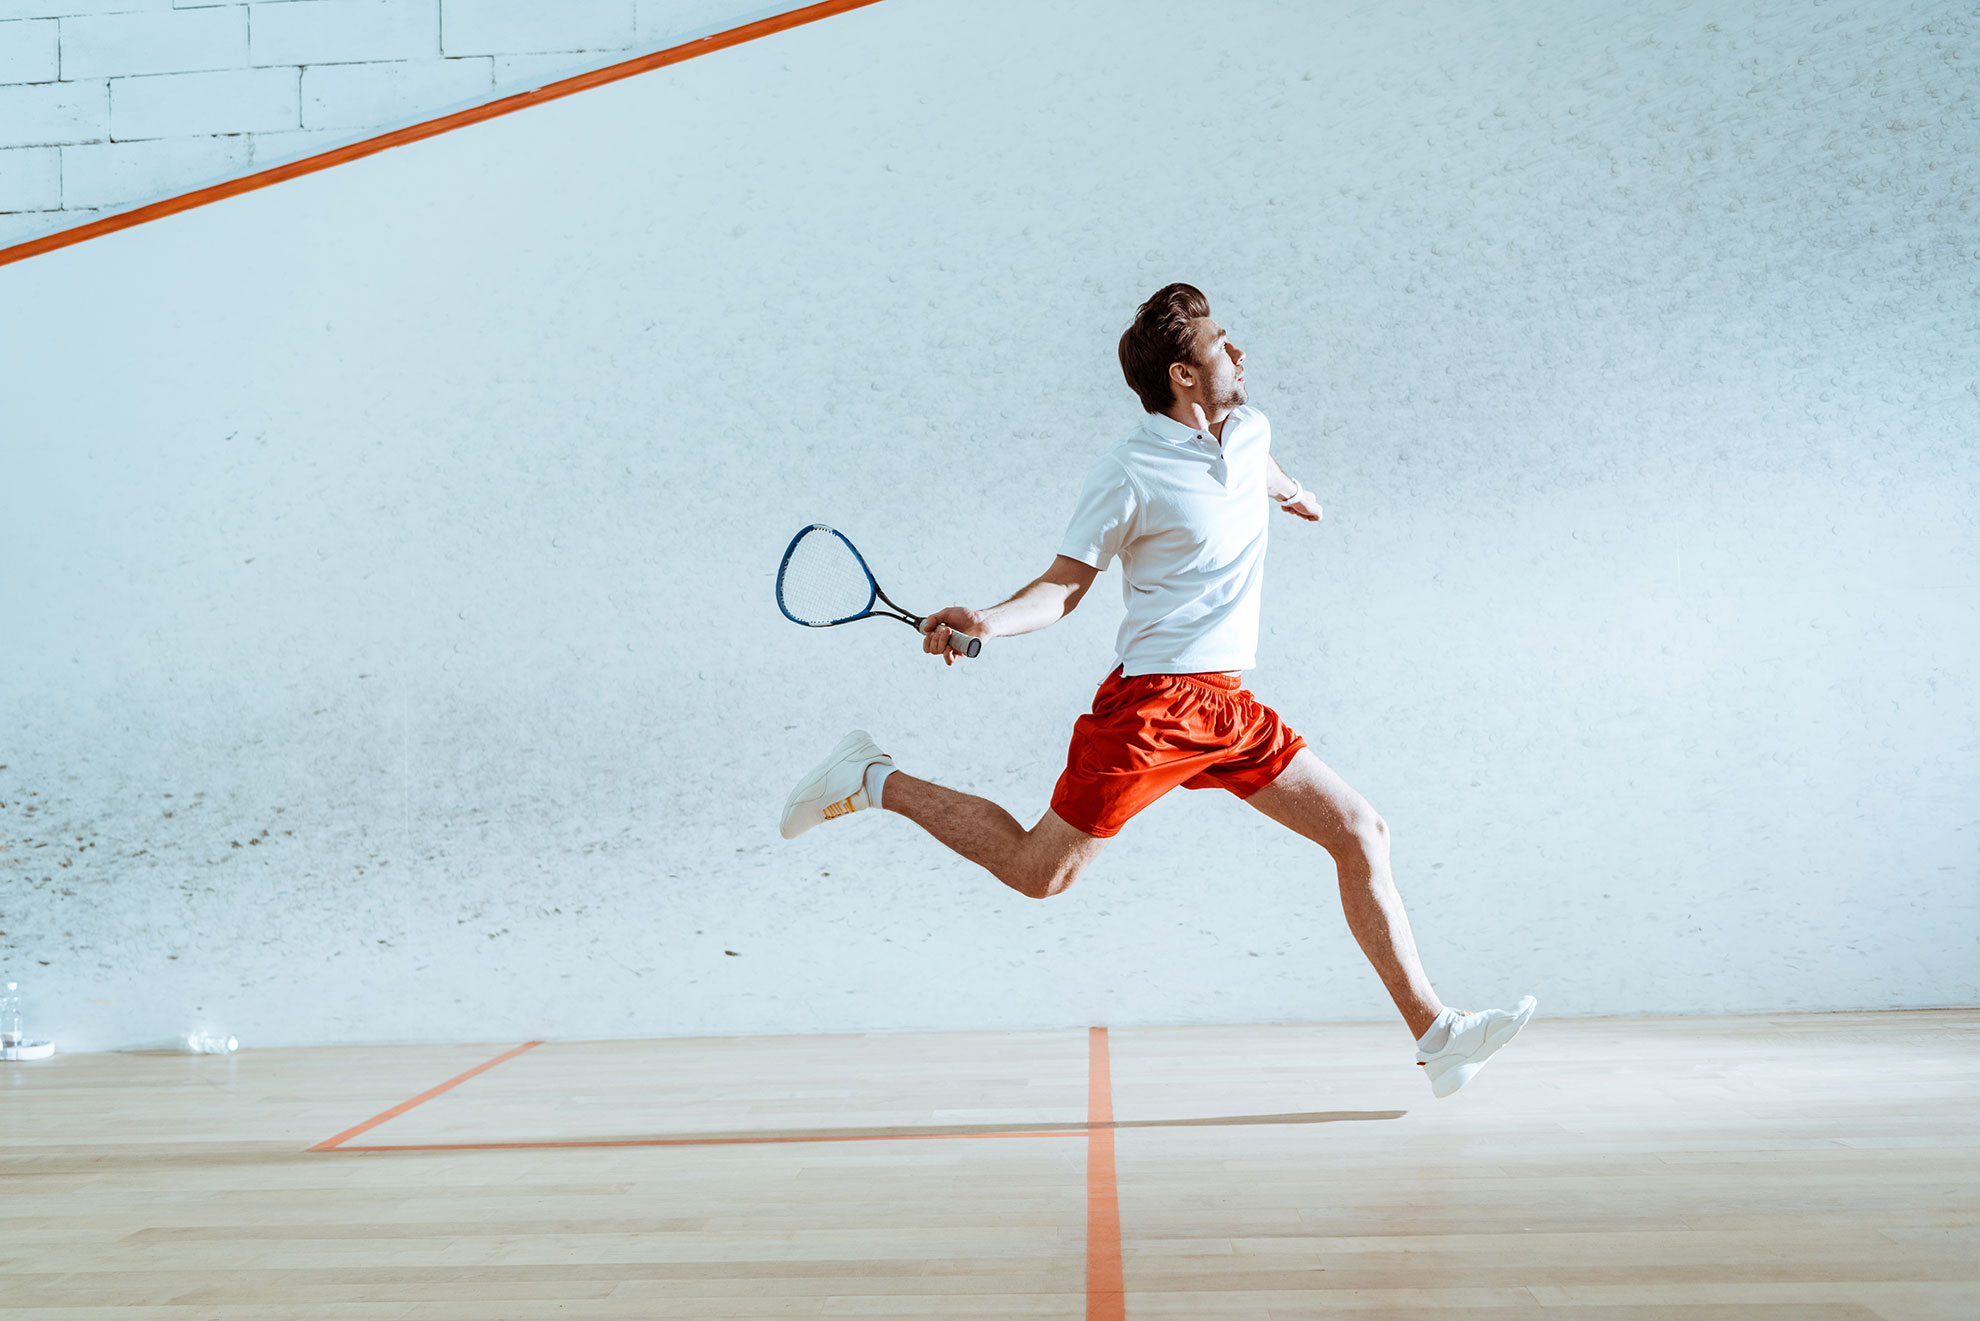 Mężczyzna grający w squasha, ilustracja do artyku o białej piłce do squasha